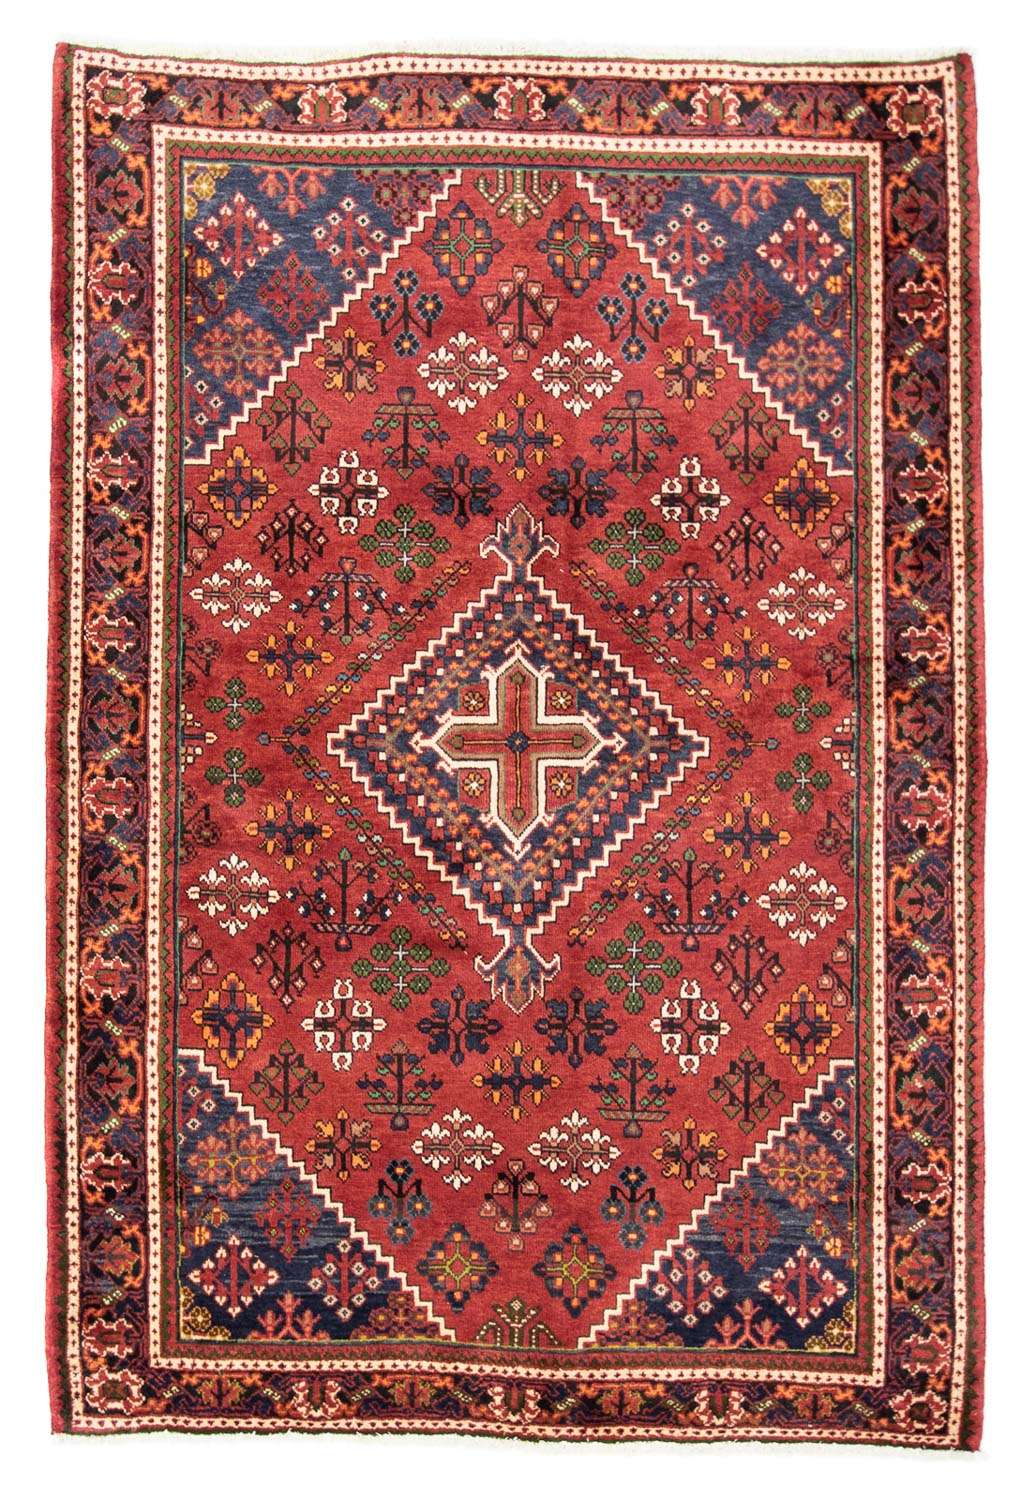 Tapete Persa - Nomadic - 205 x 138 cm - vermelho escuro